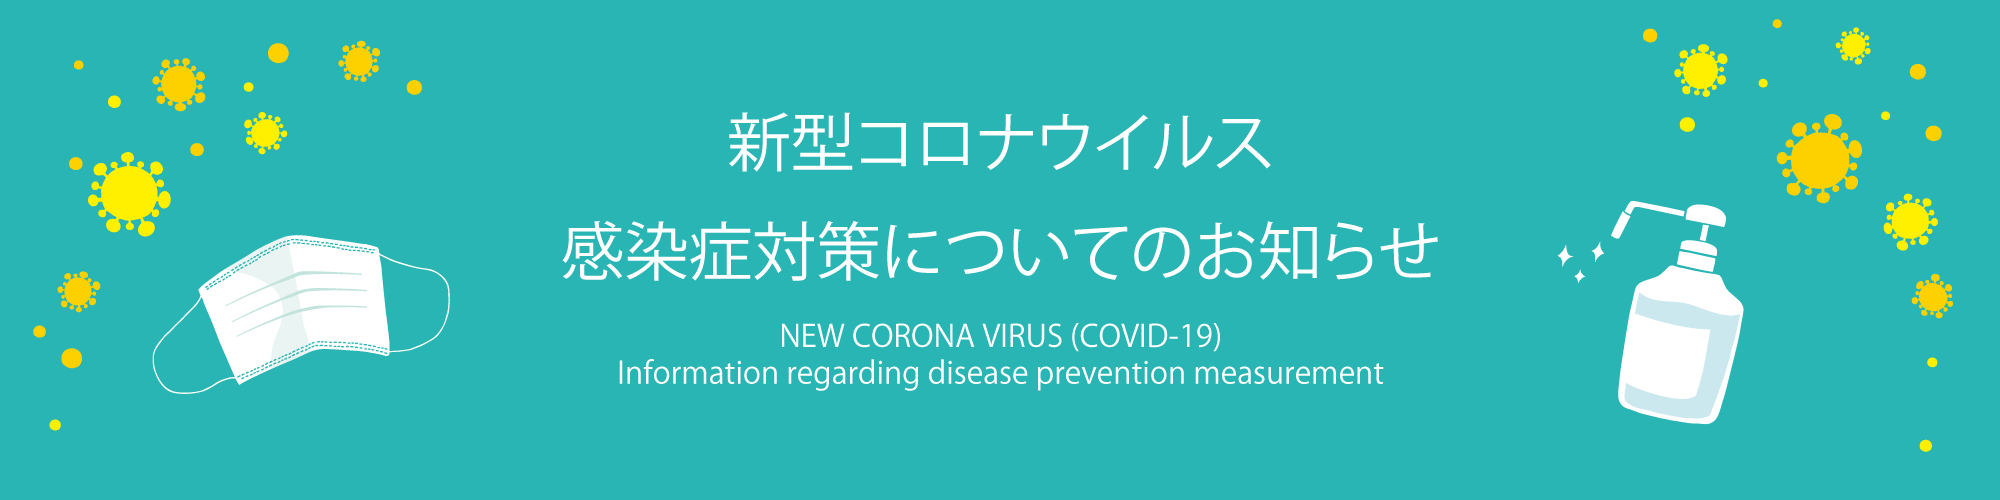 ウイルス 湯沢 コロナ 新型コロナワクチン接種予約方法について